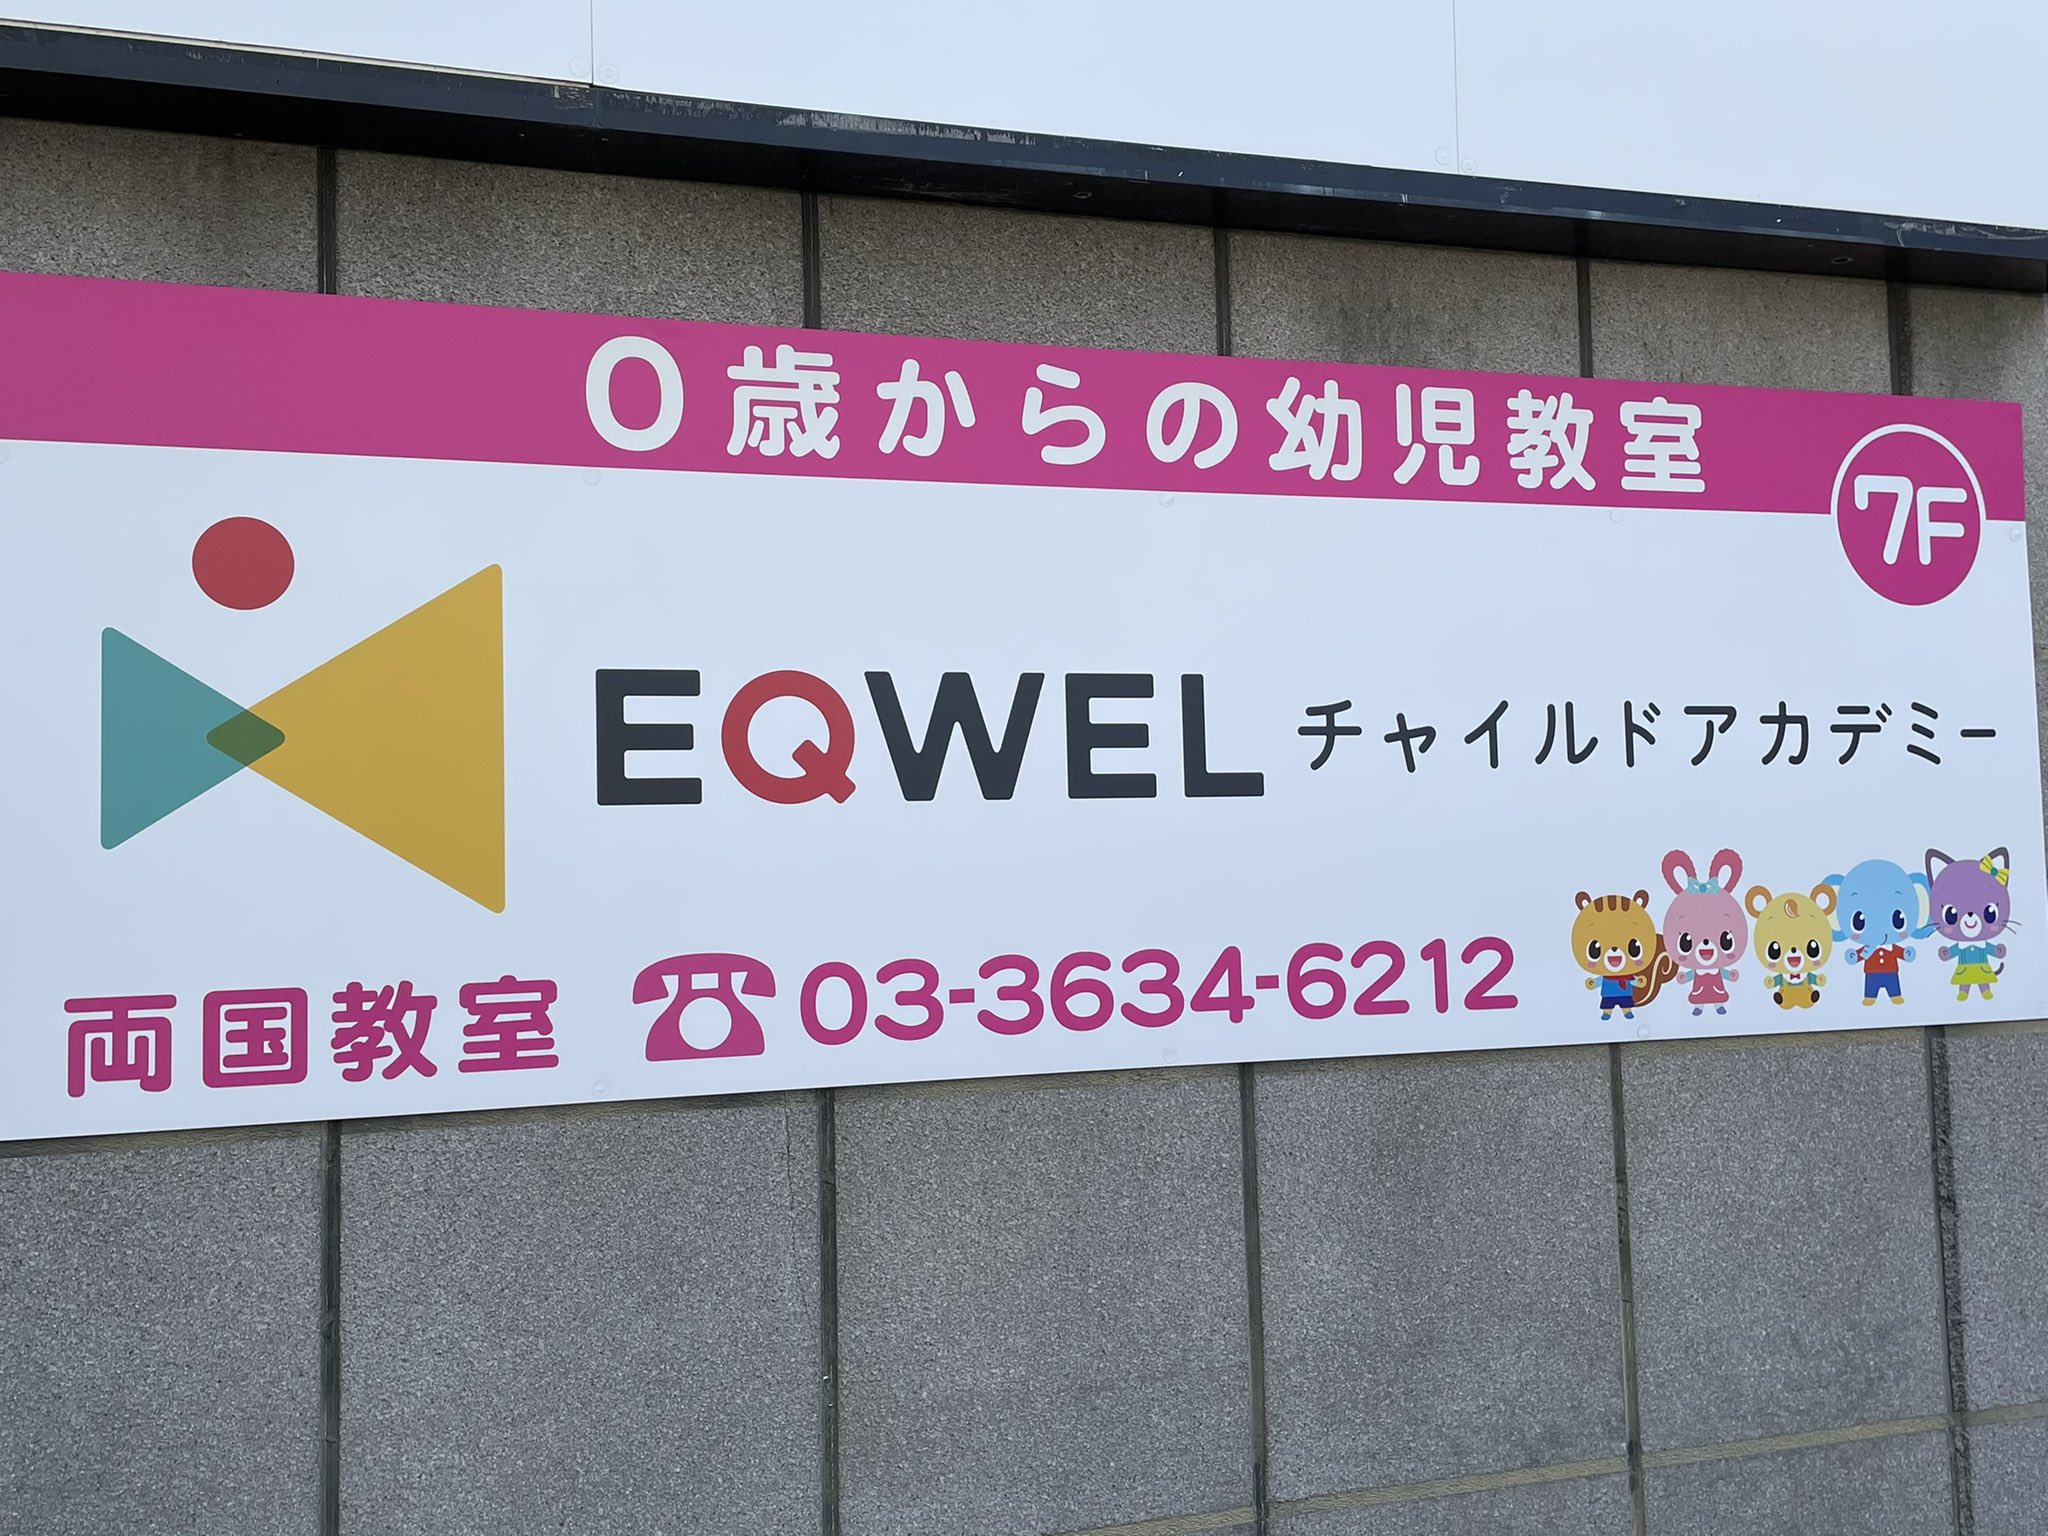 Follow EQWELチャイルドアカデミー両国教室's (@EQWEL8) latest Tweets 